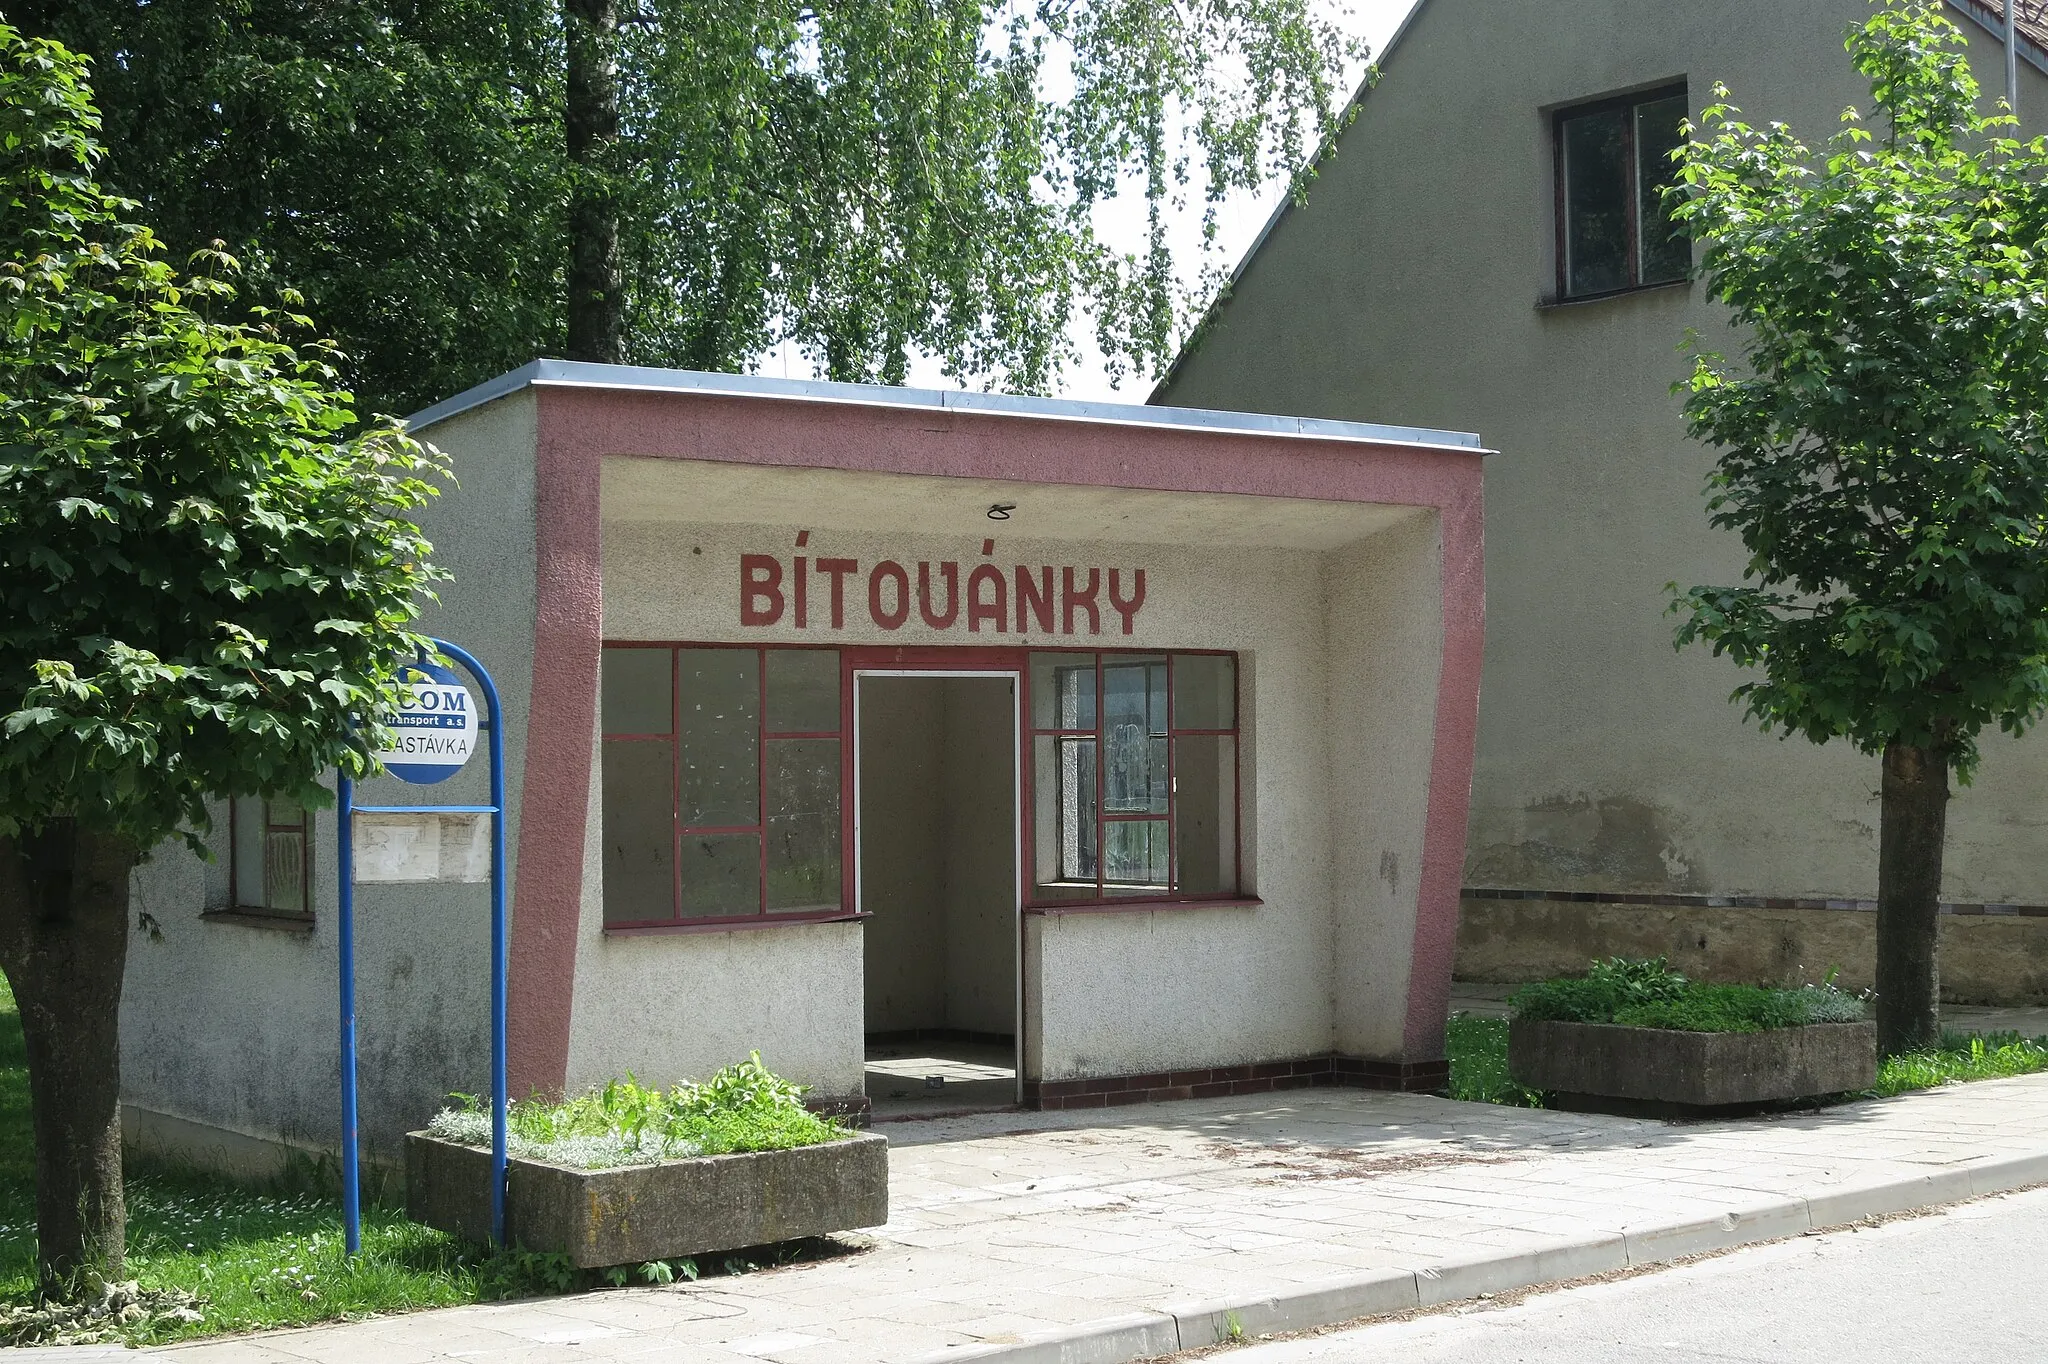 Photo showing: Bus stop in Bítovánky, Třebíč District.